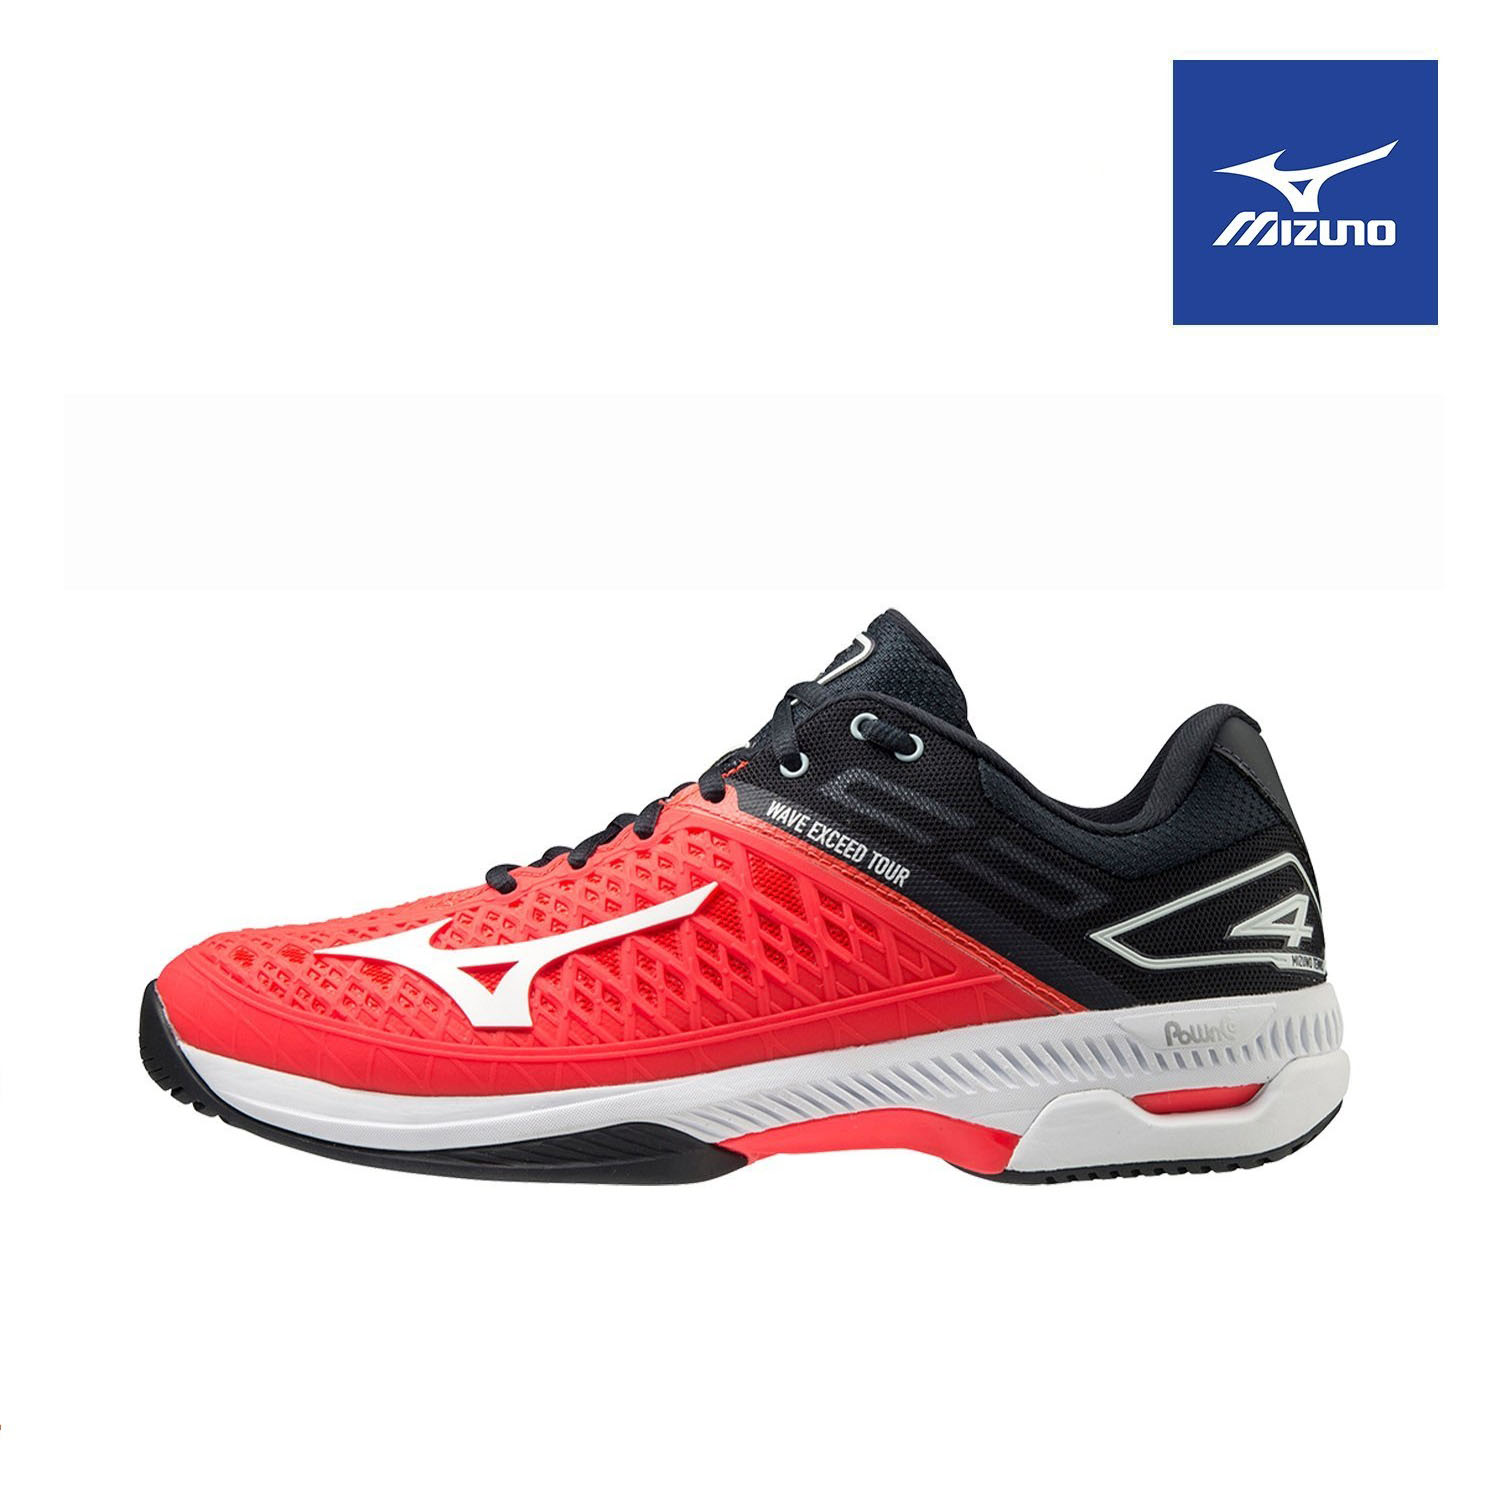 Giày tennis Mizuno Wave Exceed Tour 4 AC 61GA207062 chuyên nghiệp, màu đỏ, chống lật cổ chân